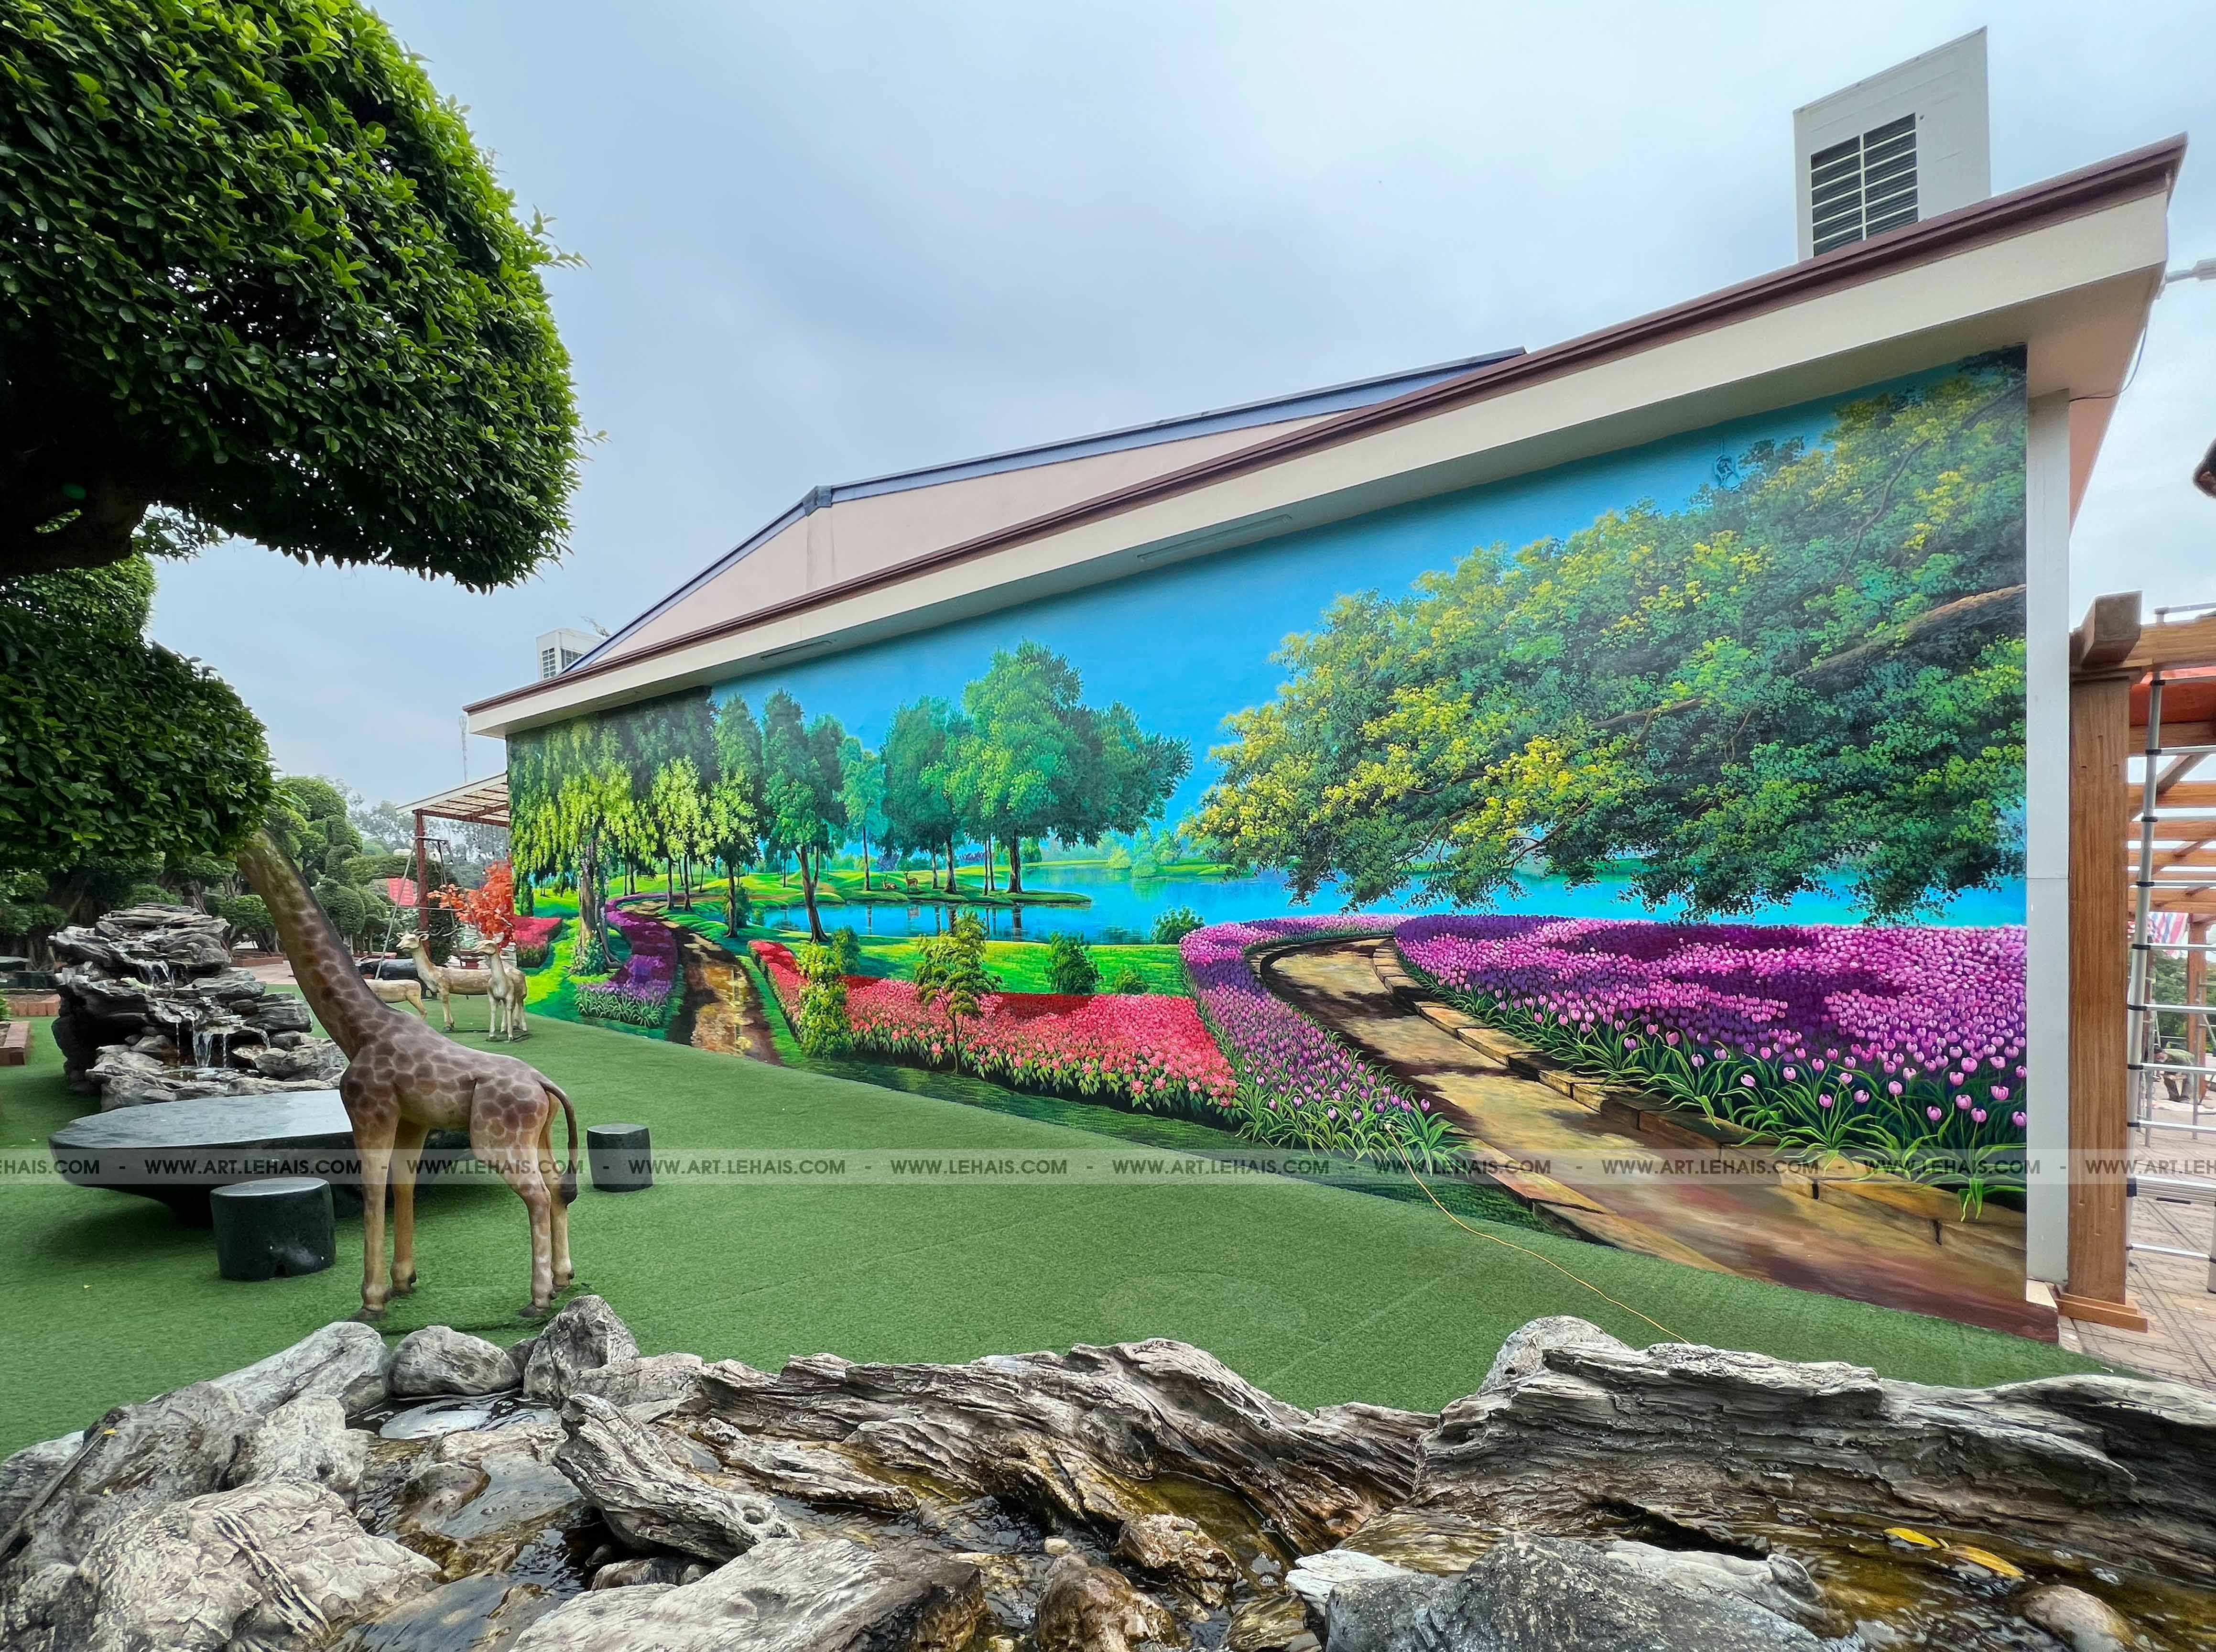 Vẽ tranh phong cảnh 3D trên tường tại khu du lịch sinh thái Dũng Tân ở Sông Công, Thái Nguyên - TT192LHAR 29